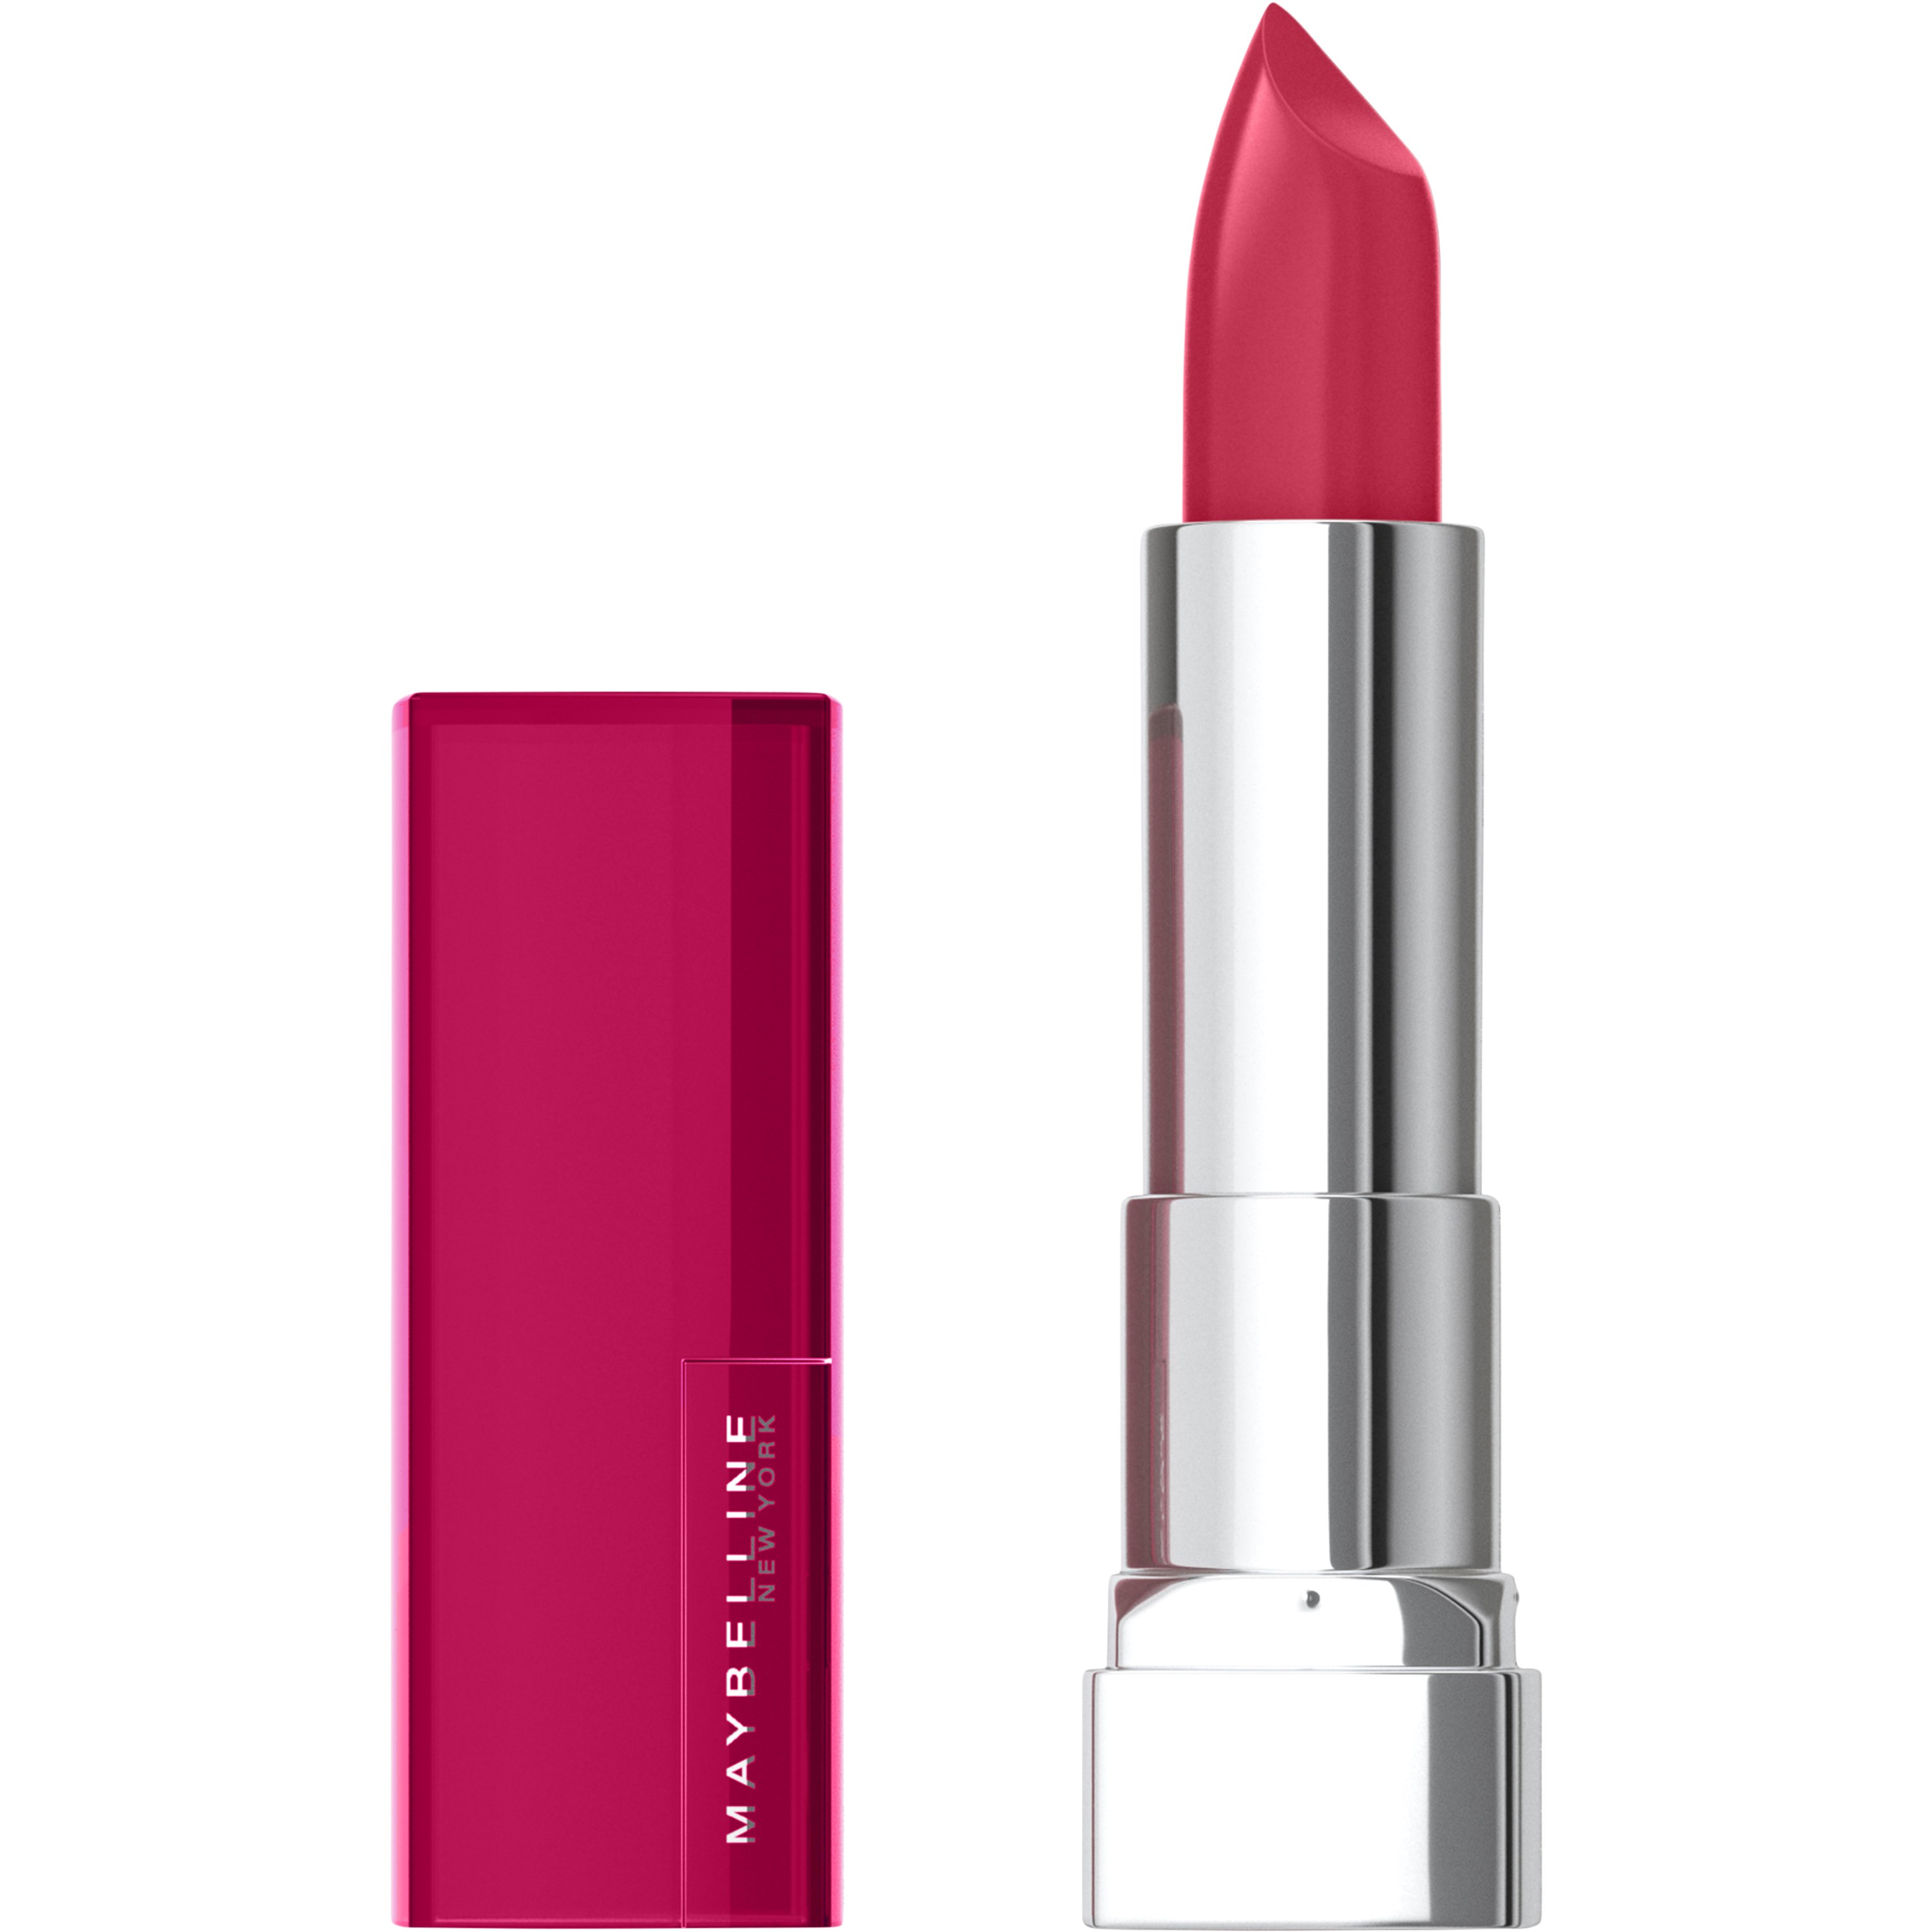 Bilde av Maybelline New York Color Sensational Lipstick Pink Pose 233